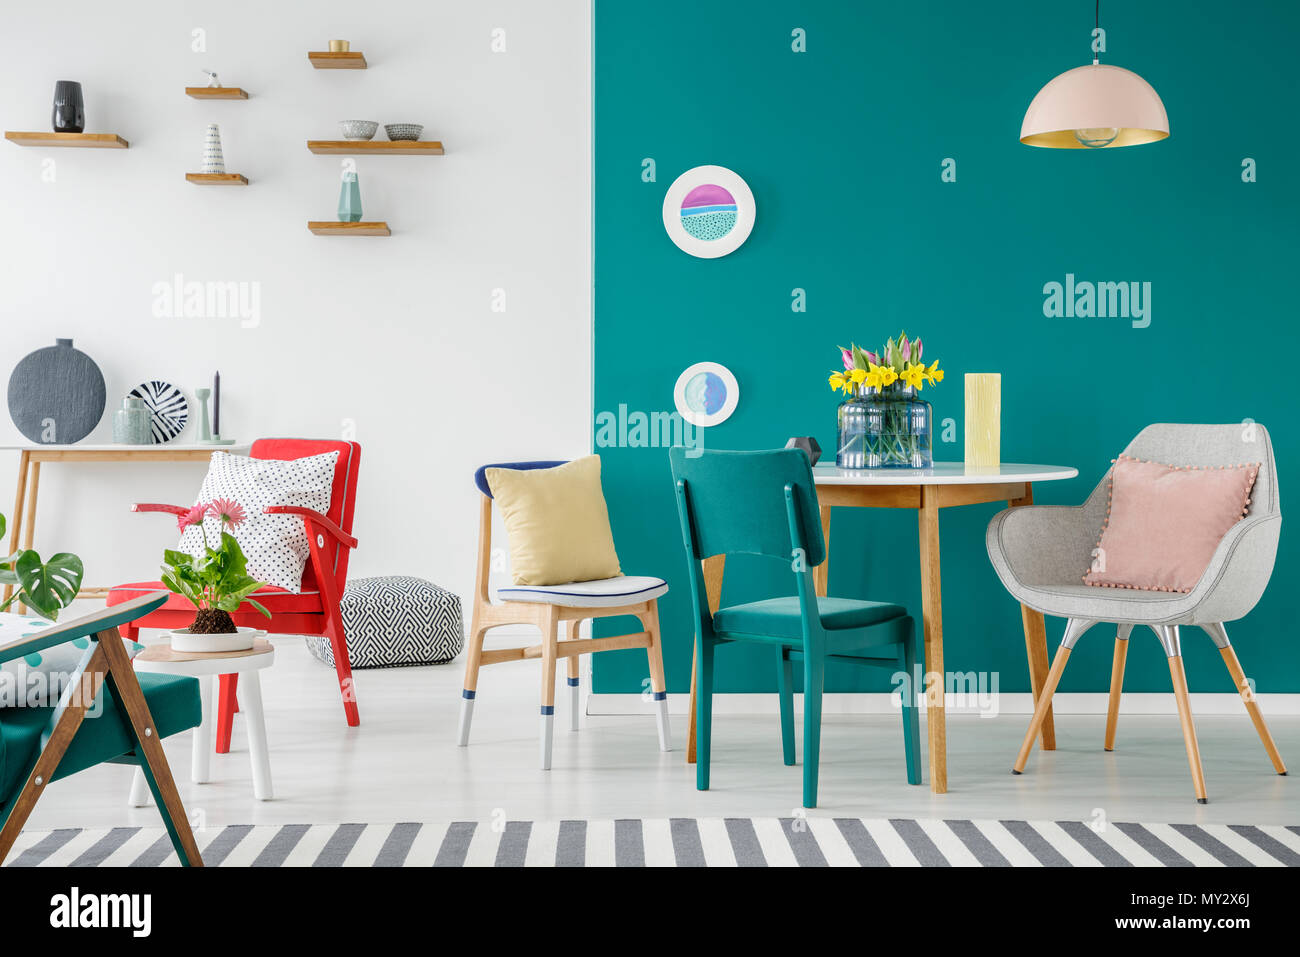 Chaises table en bois contre le mur vert dans appartement coloré avec des fleurs d'intérieur Banque D'Images